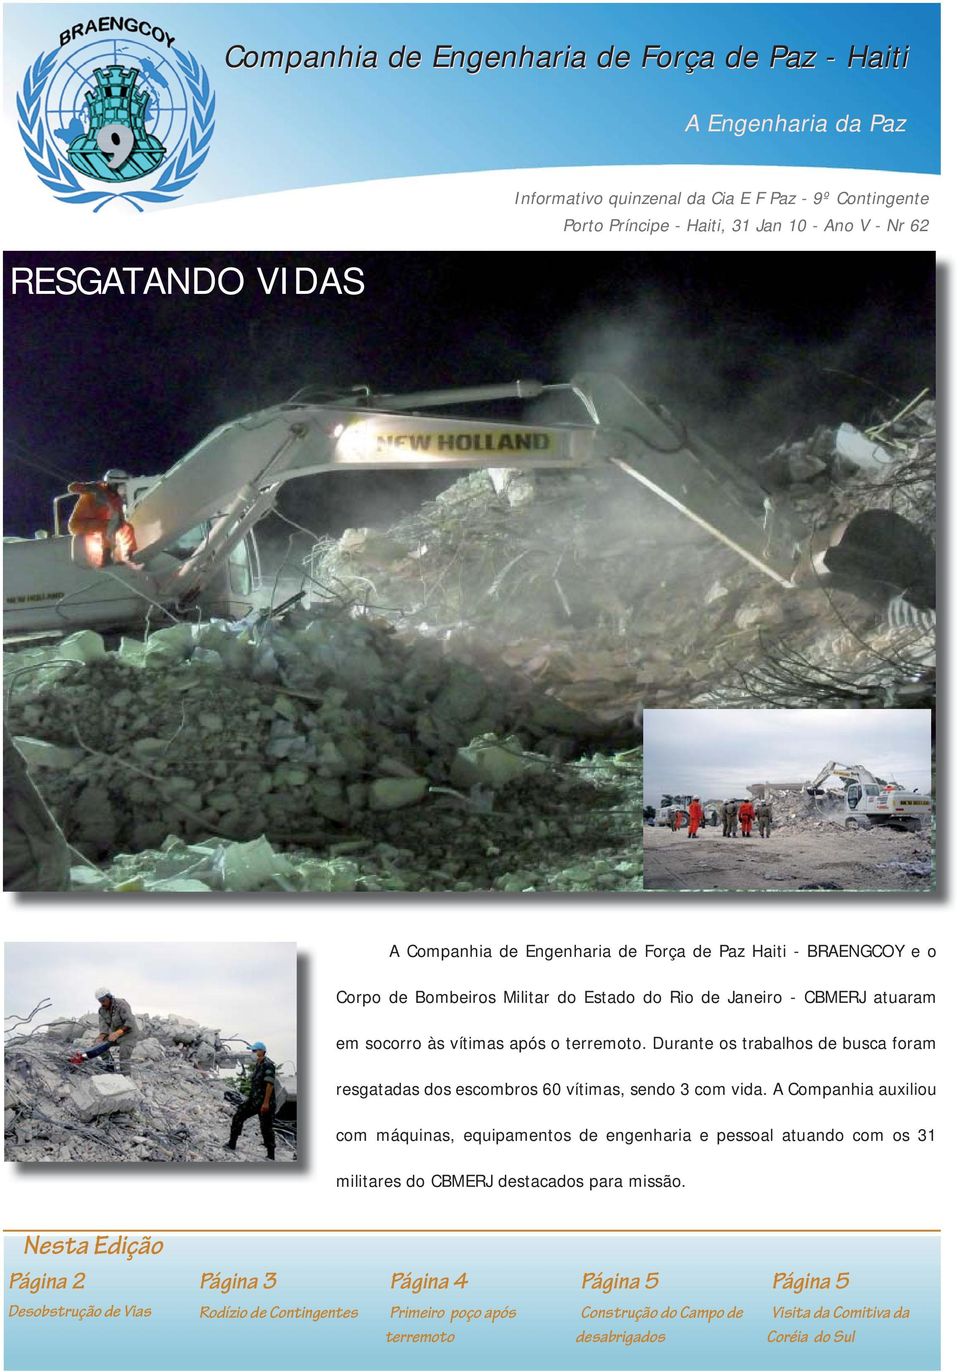 Durante os trabalhos de busca foram resgatadas dos escombros 60 vítimas, sendo 3 com vida.